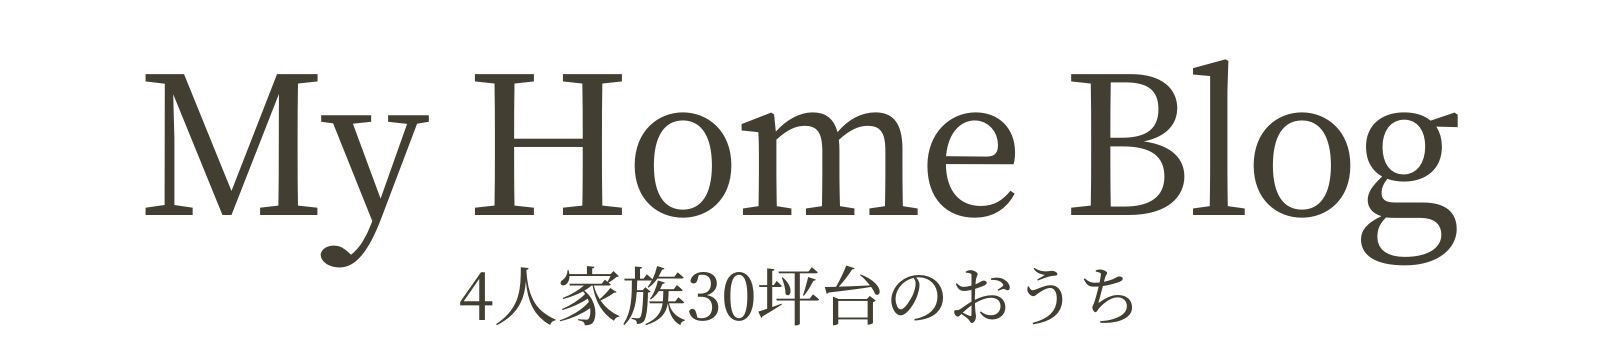 東京マイホームブログ